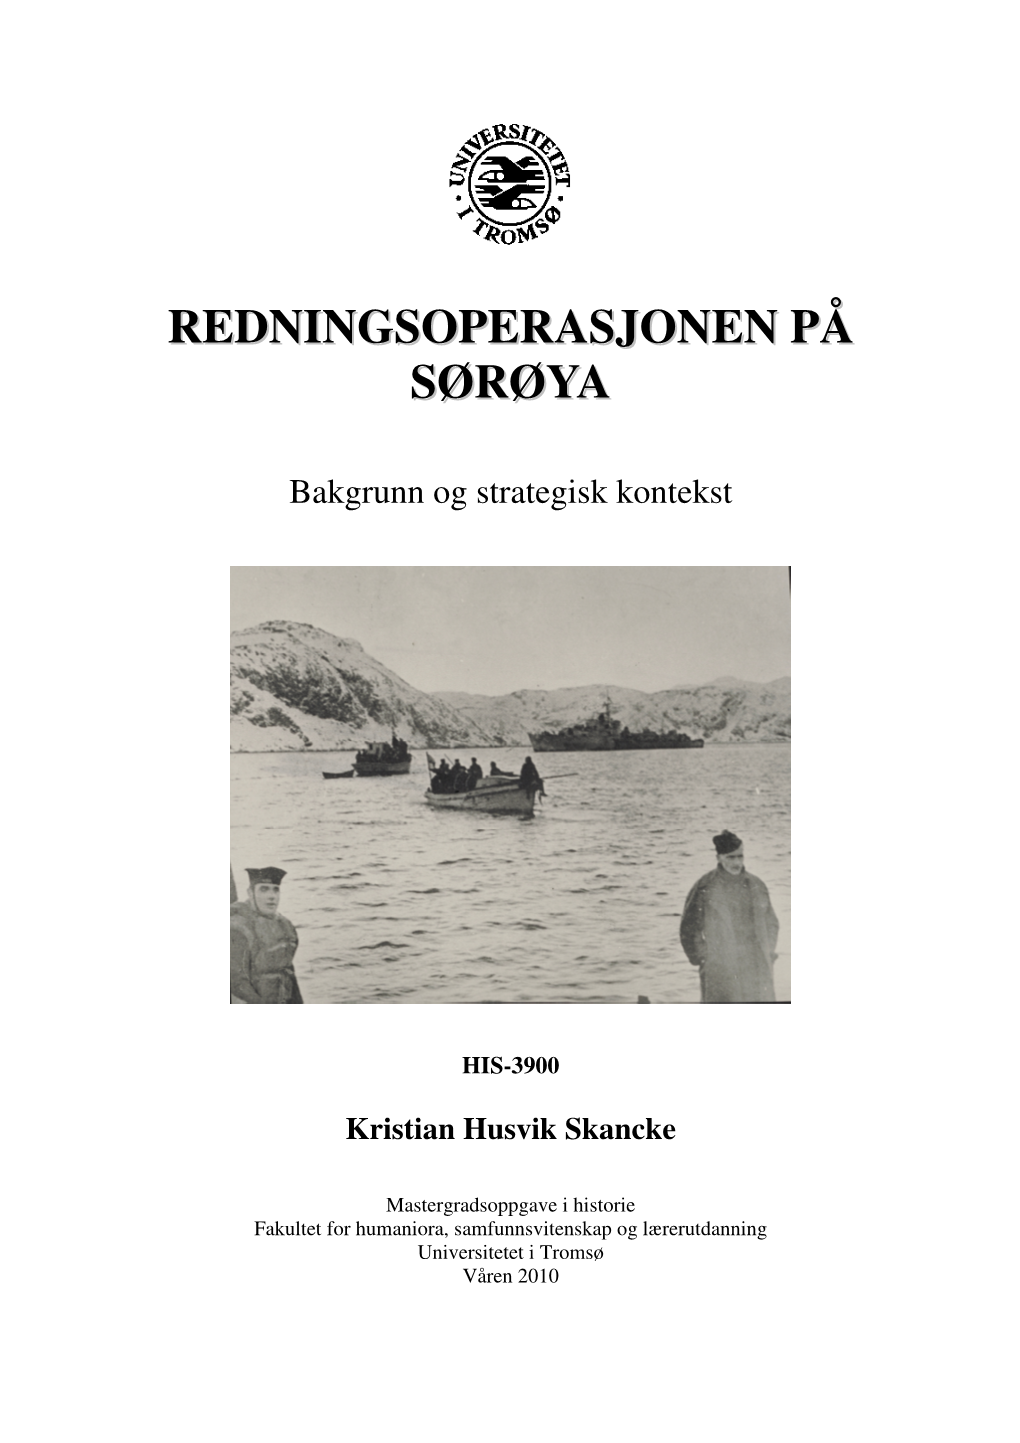 Redningsoperasjonen På Sørøya Var En Britisk Marineoperasjon for Å Evakuere Flyktninger Fra Sørøya I Vest-Finnmark Mot Slutten Av Den Andre Verdenskrig